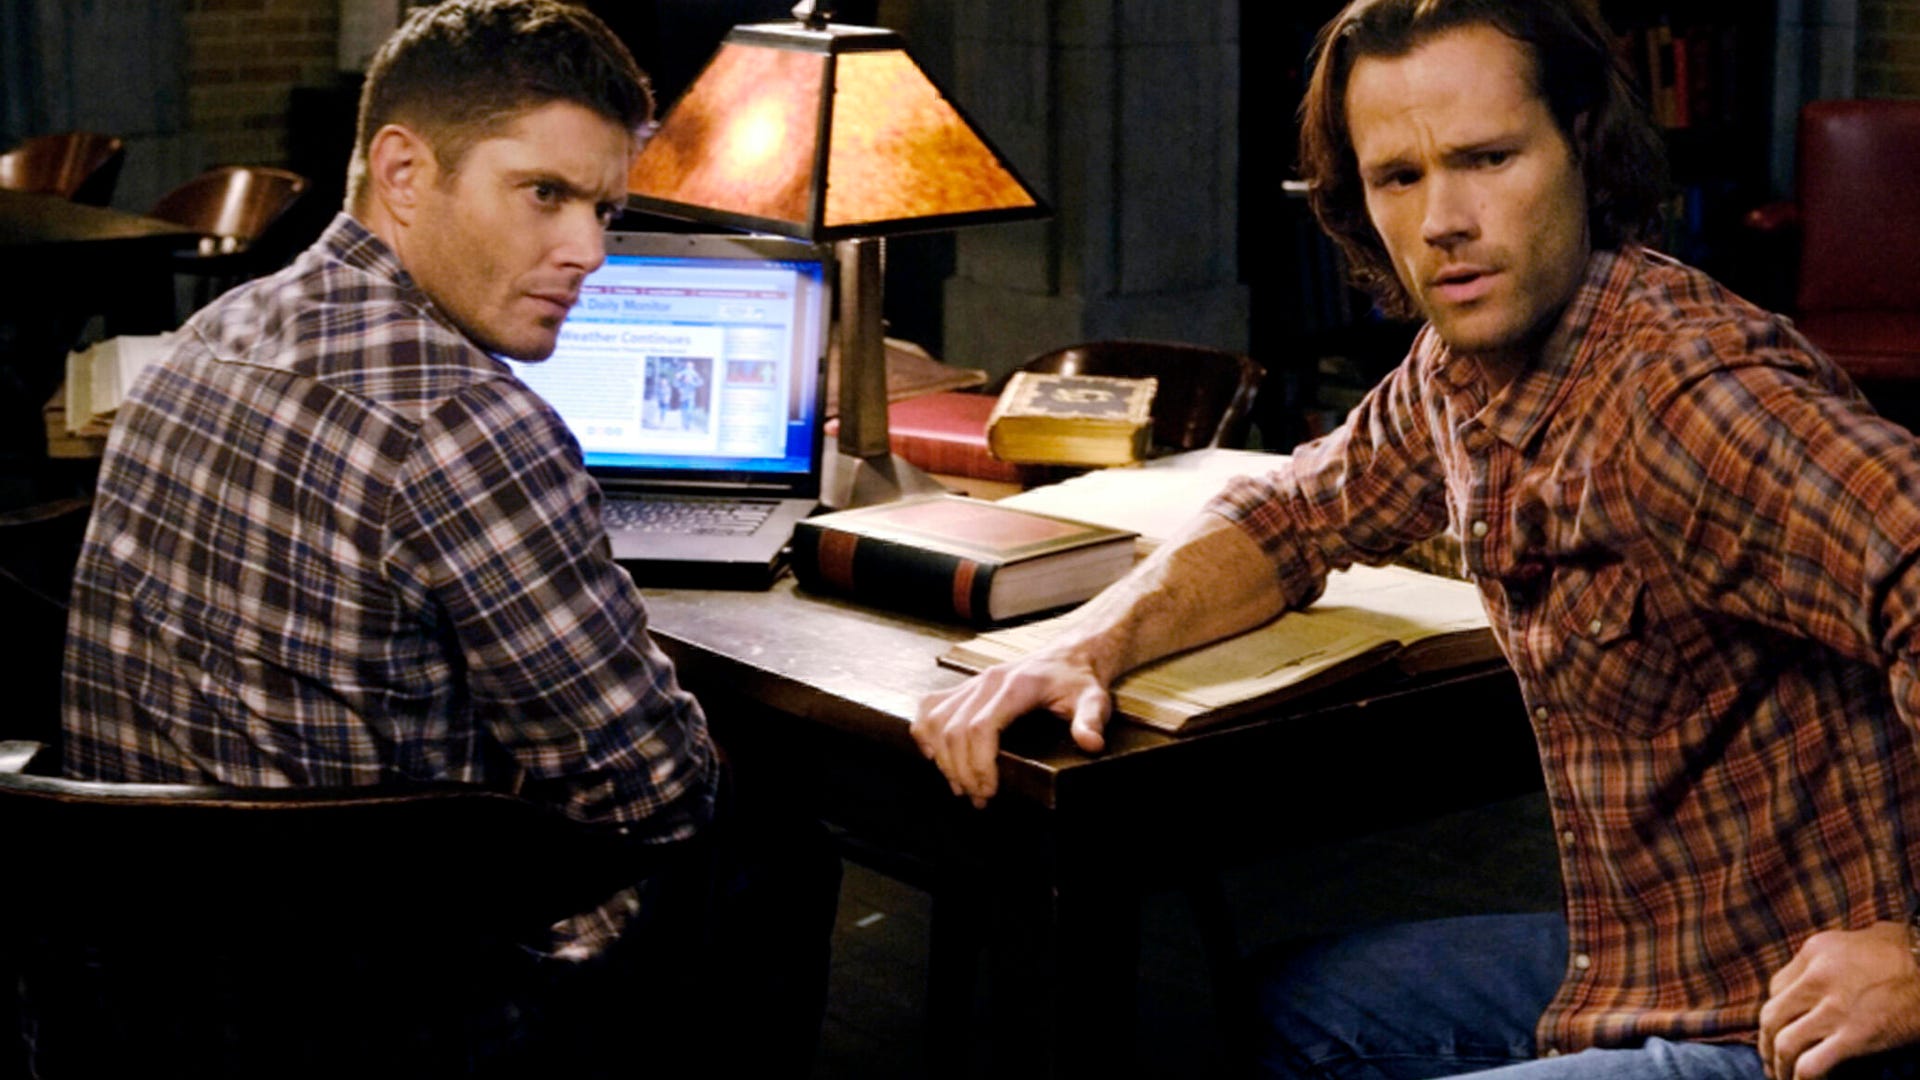 Jensen Ackles and Jared Padalecki, Supernatural